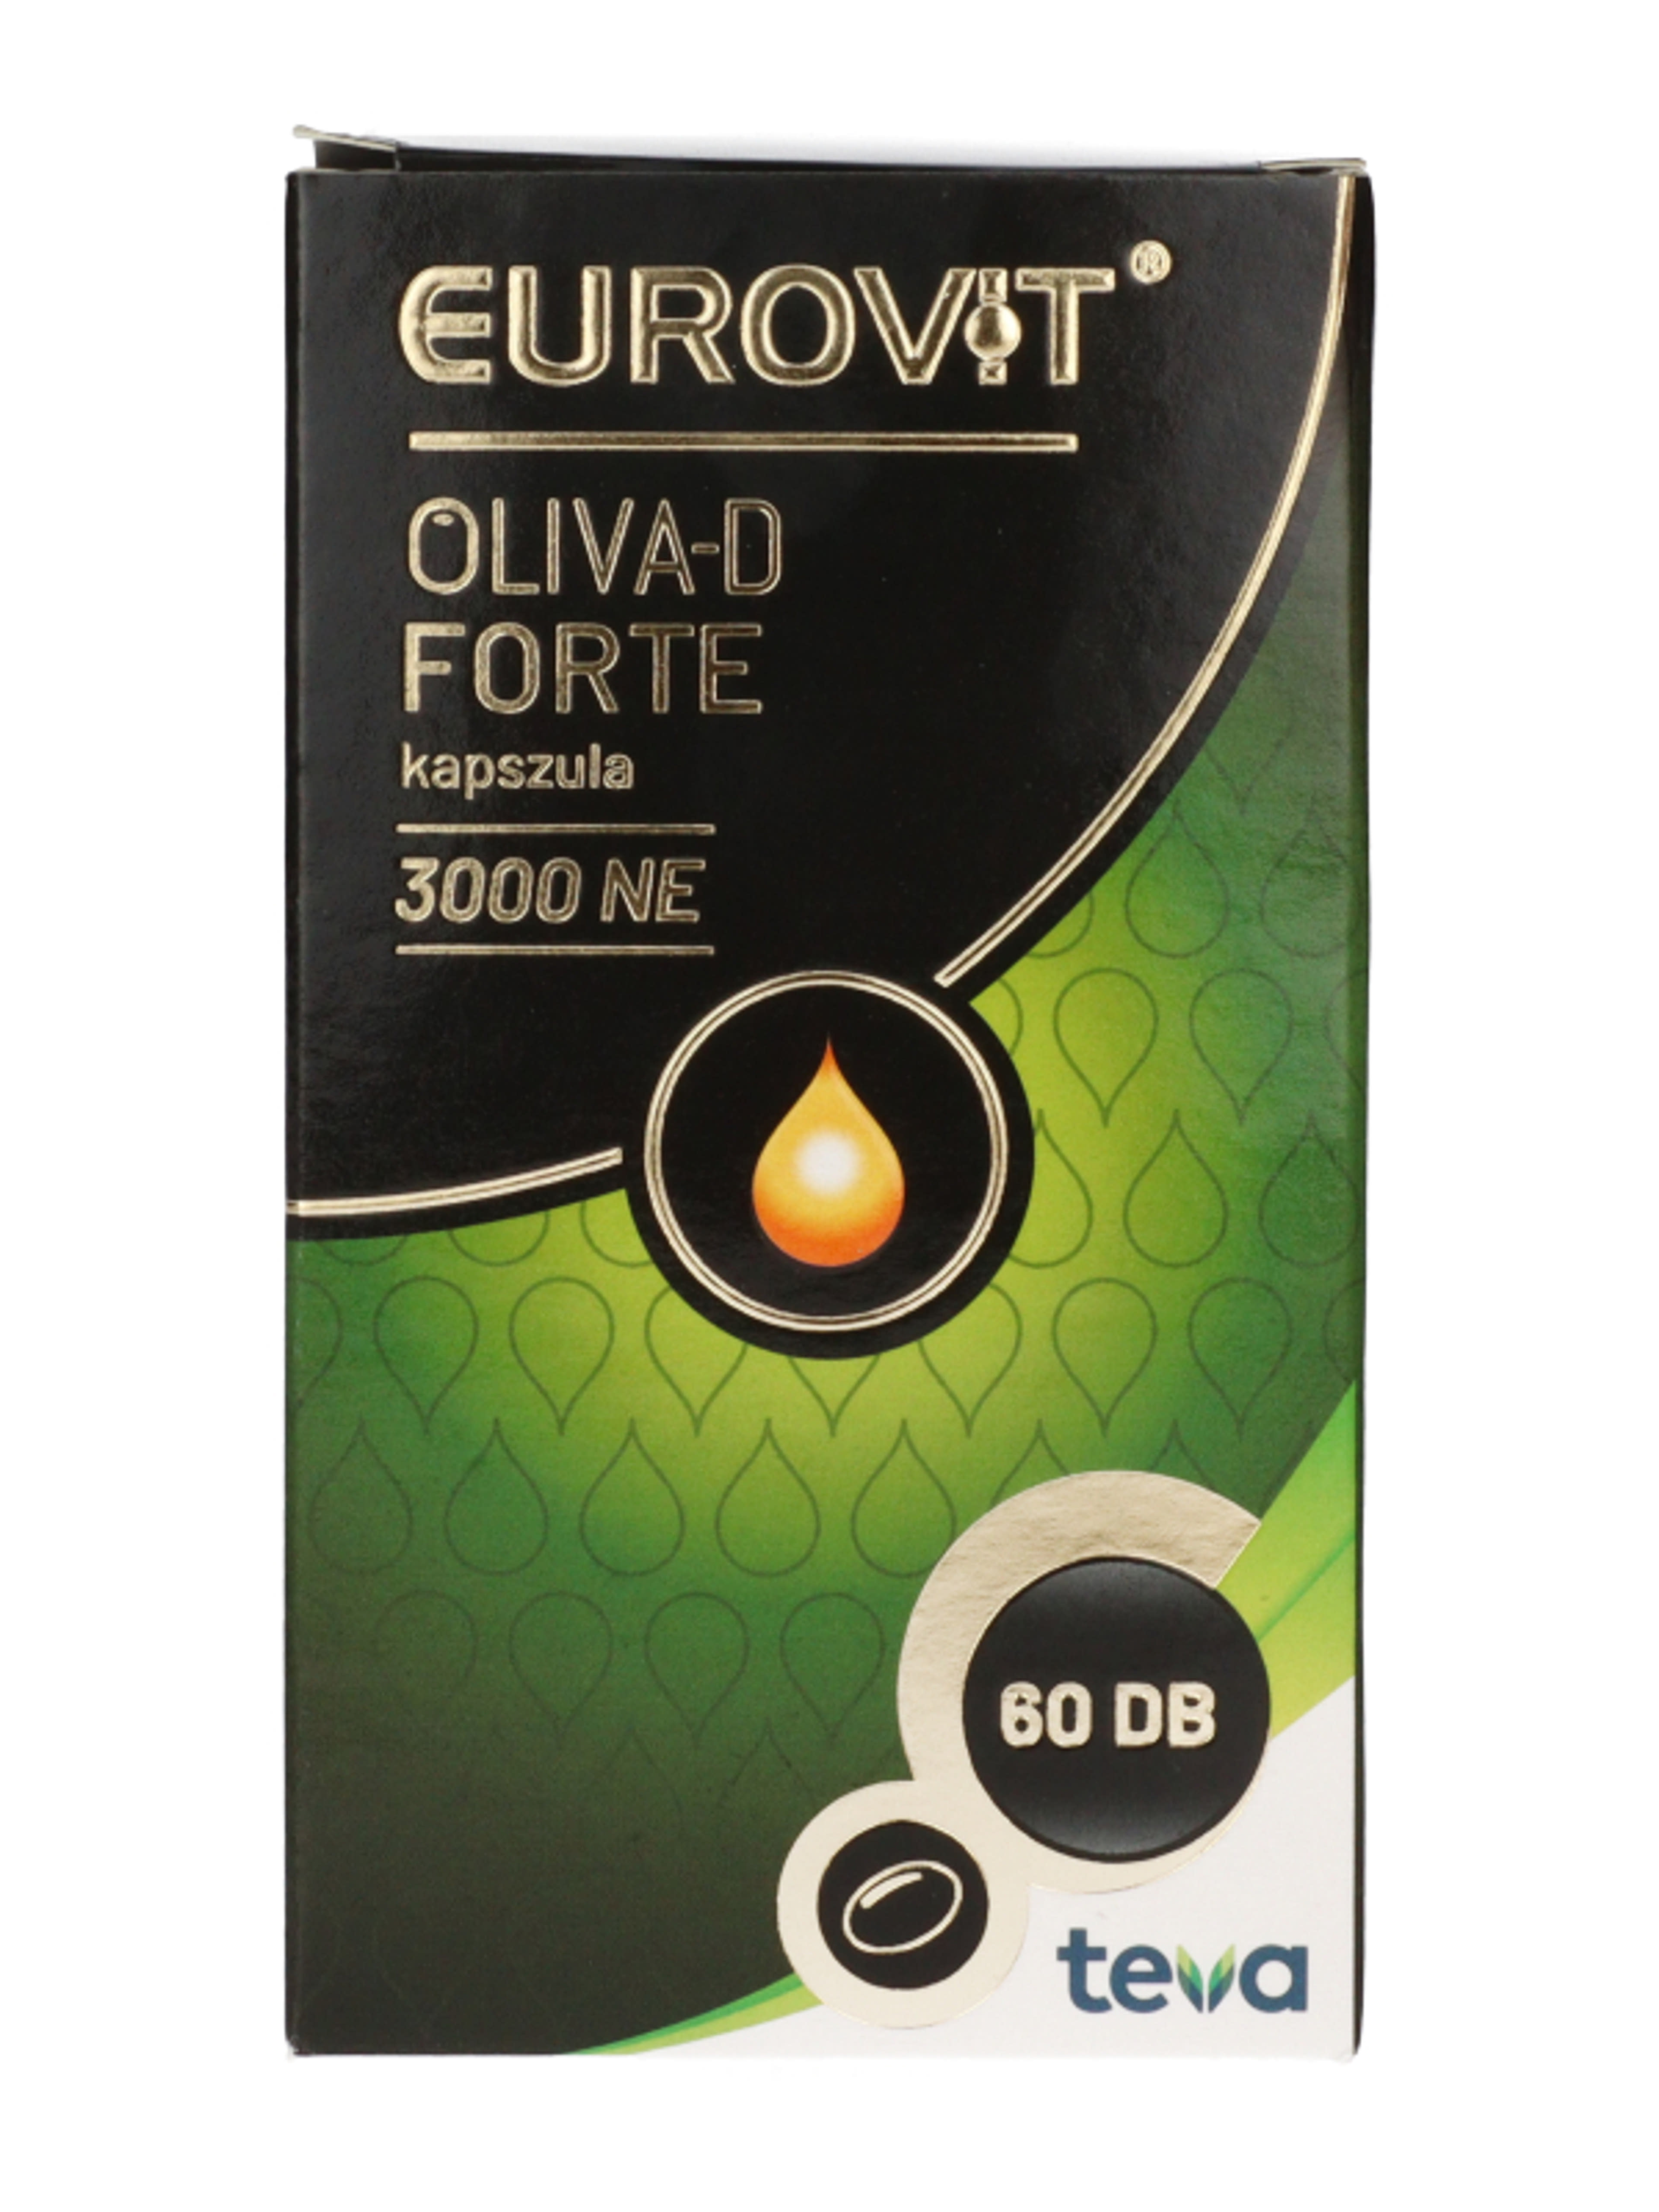 Eurovit Oliva-D 3000 NE kapszula - 60 db-3